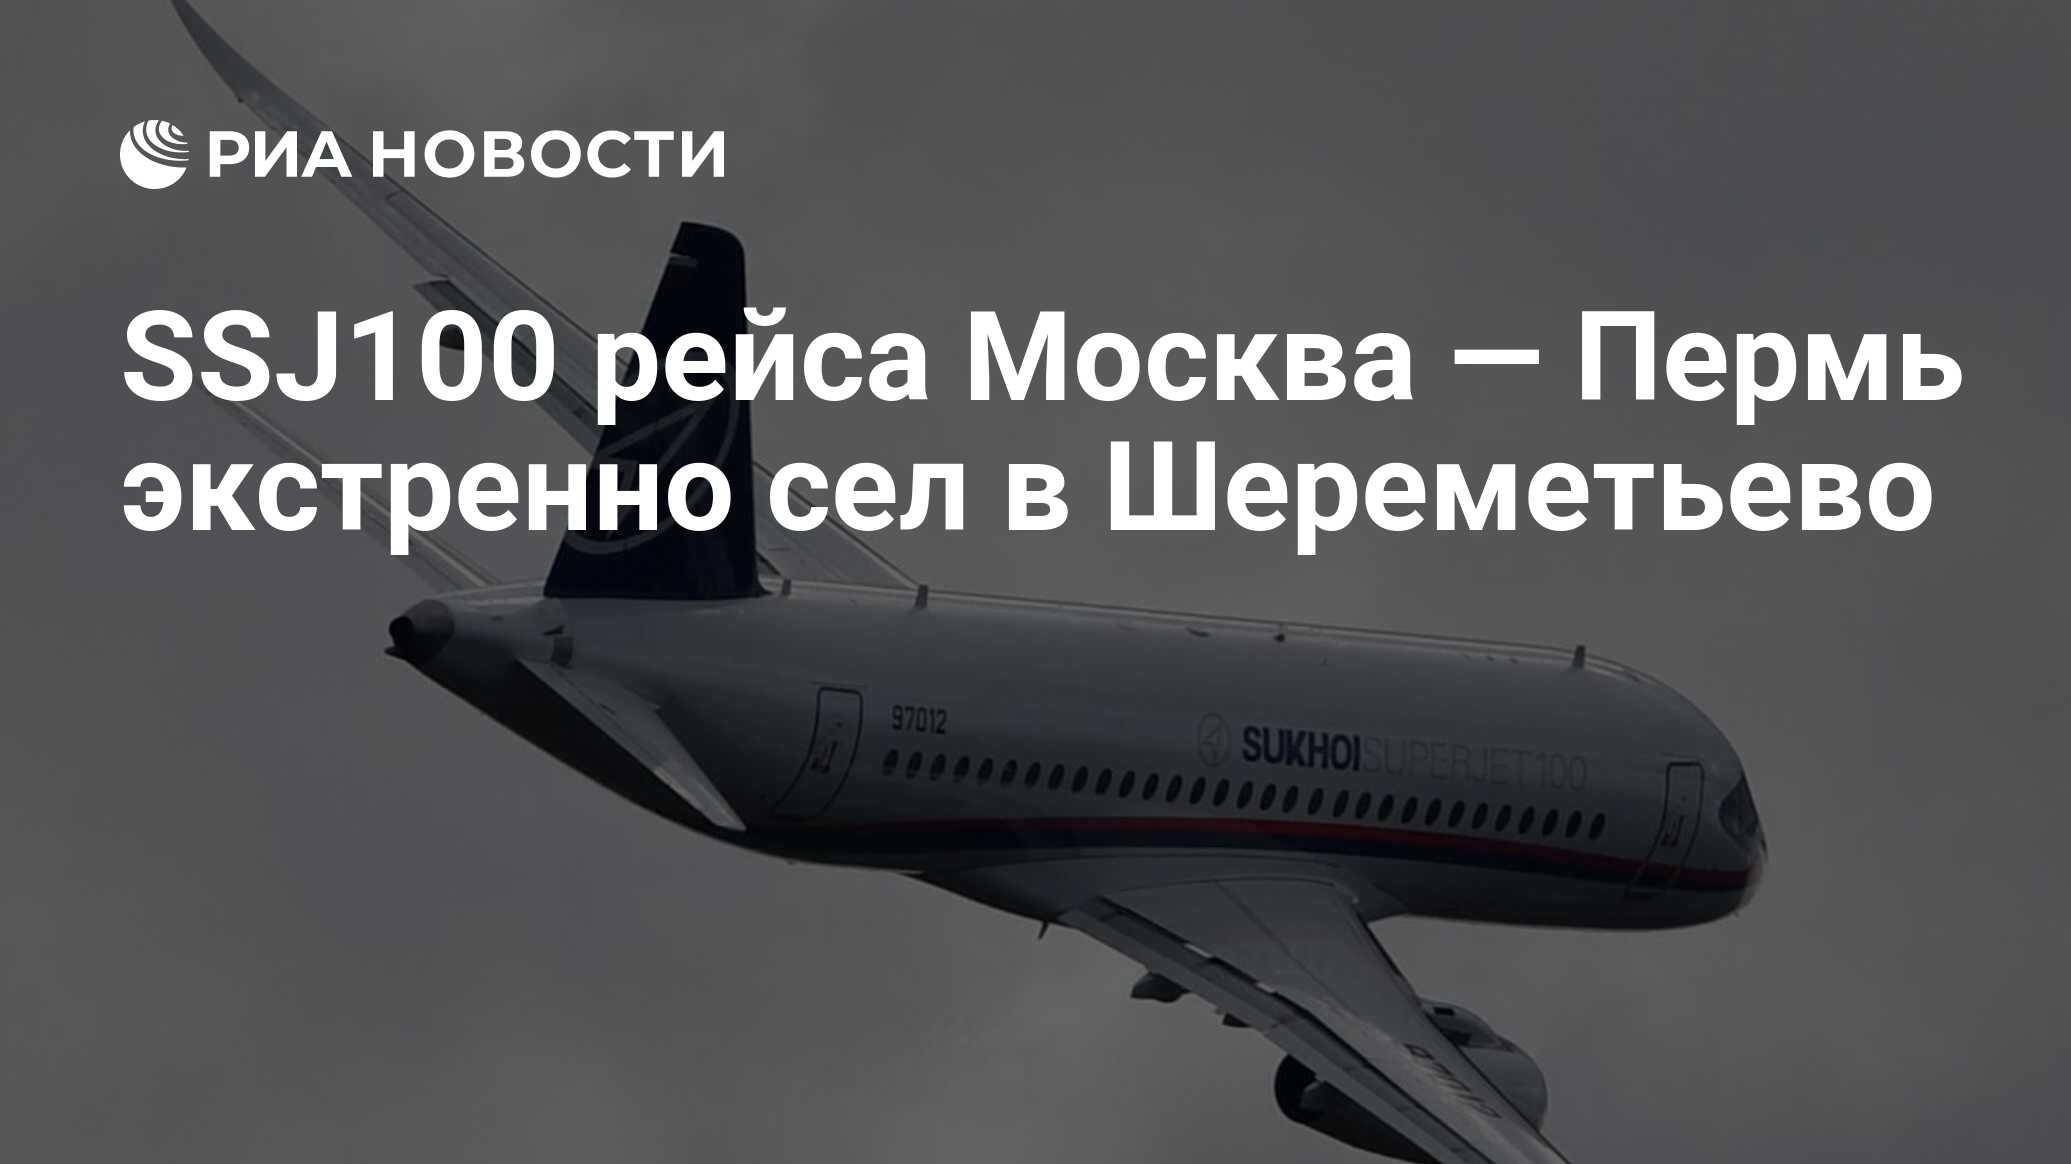 Москва махачкала шереметьево рейсы